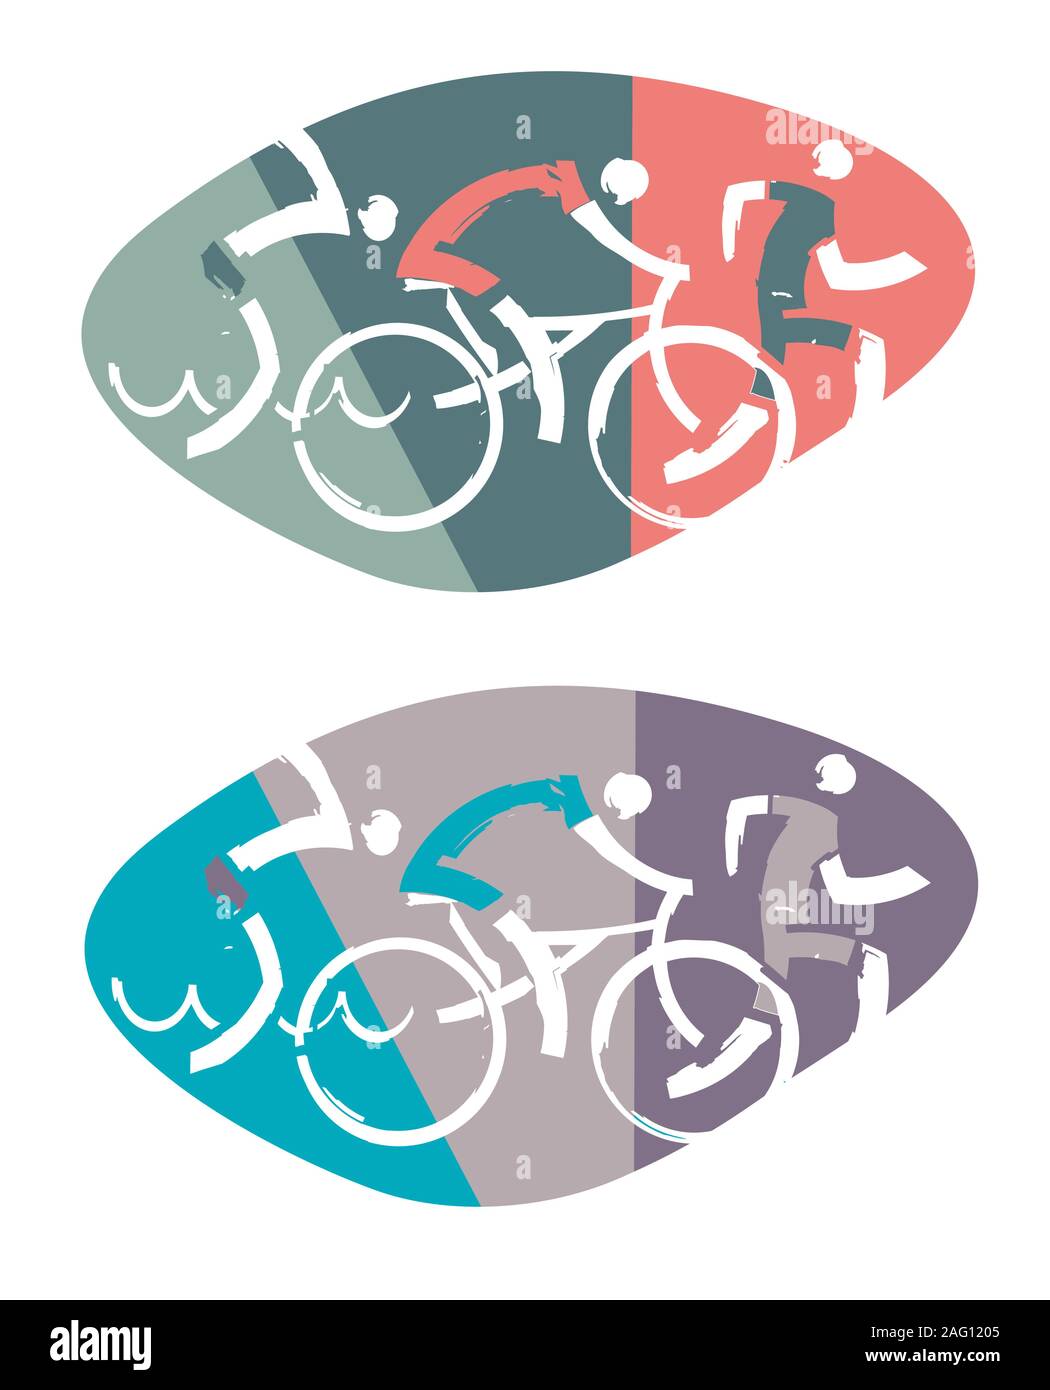 Nuotatore, ciclista, runner racers. Tre triathlon atleti stilizzati. Vettore disponibile. Illustrazione Vettoriale